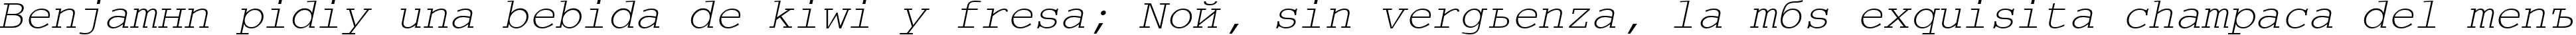 Пример написания шрифтом CourierTM Italic текста на испанском